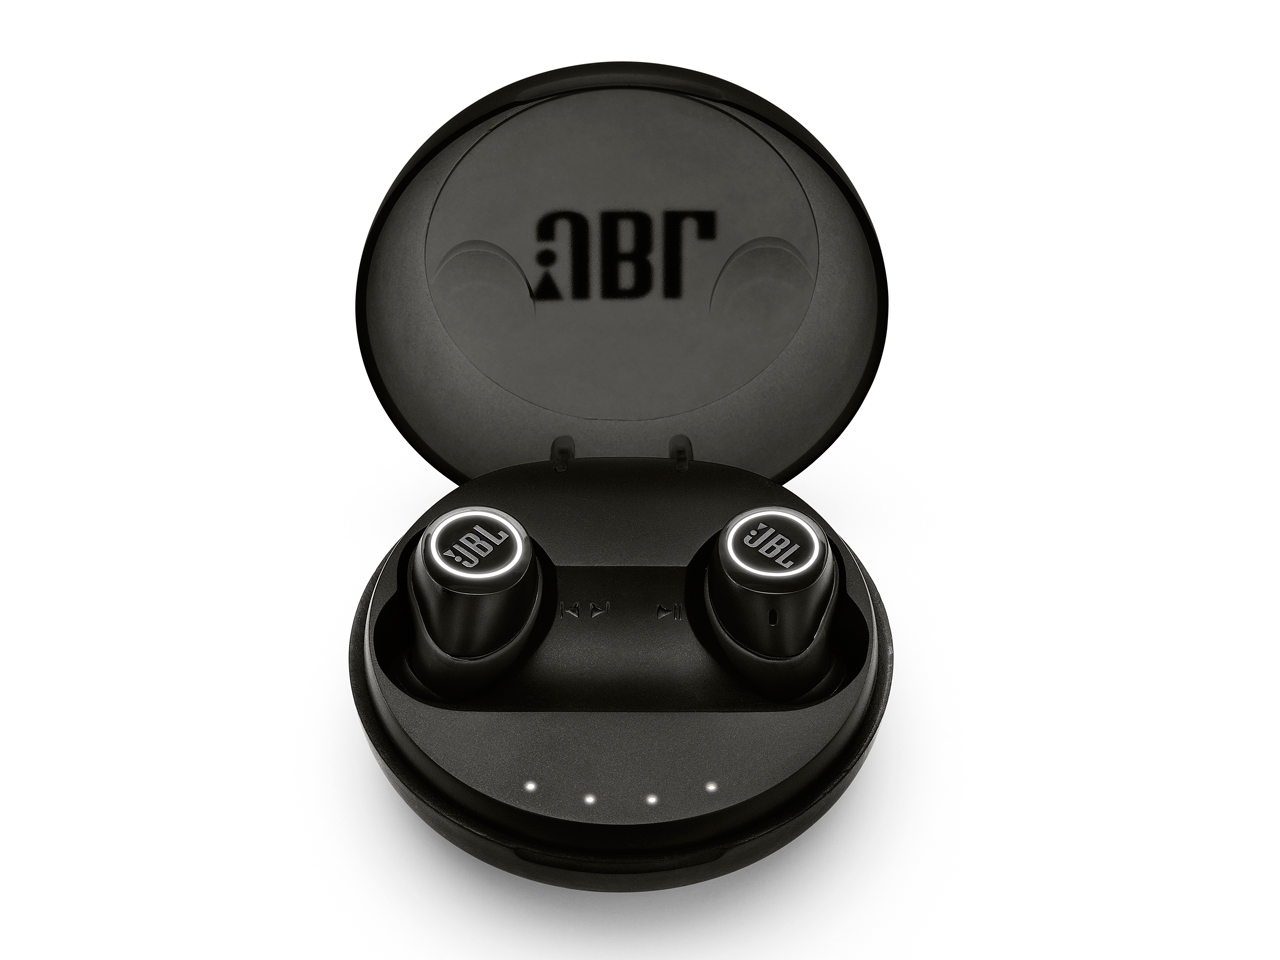 価格.com - 『本体 付属品 ケース1』 JBL FREE X [ブラック] の製品画像